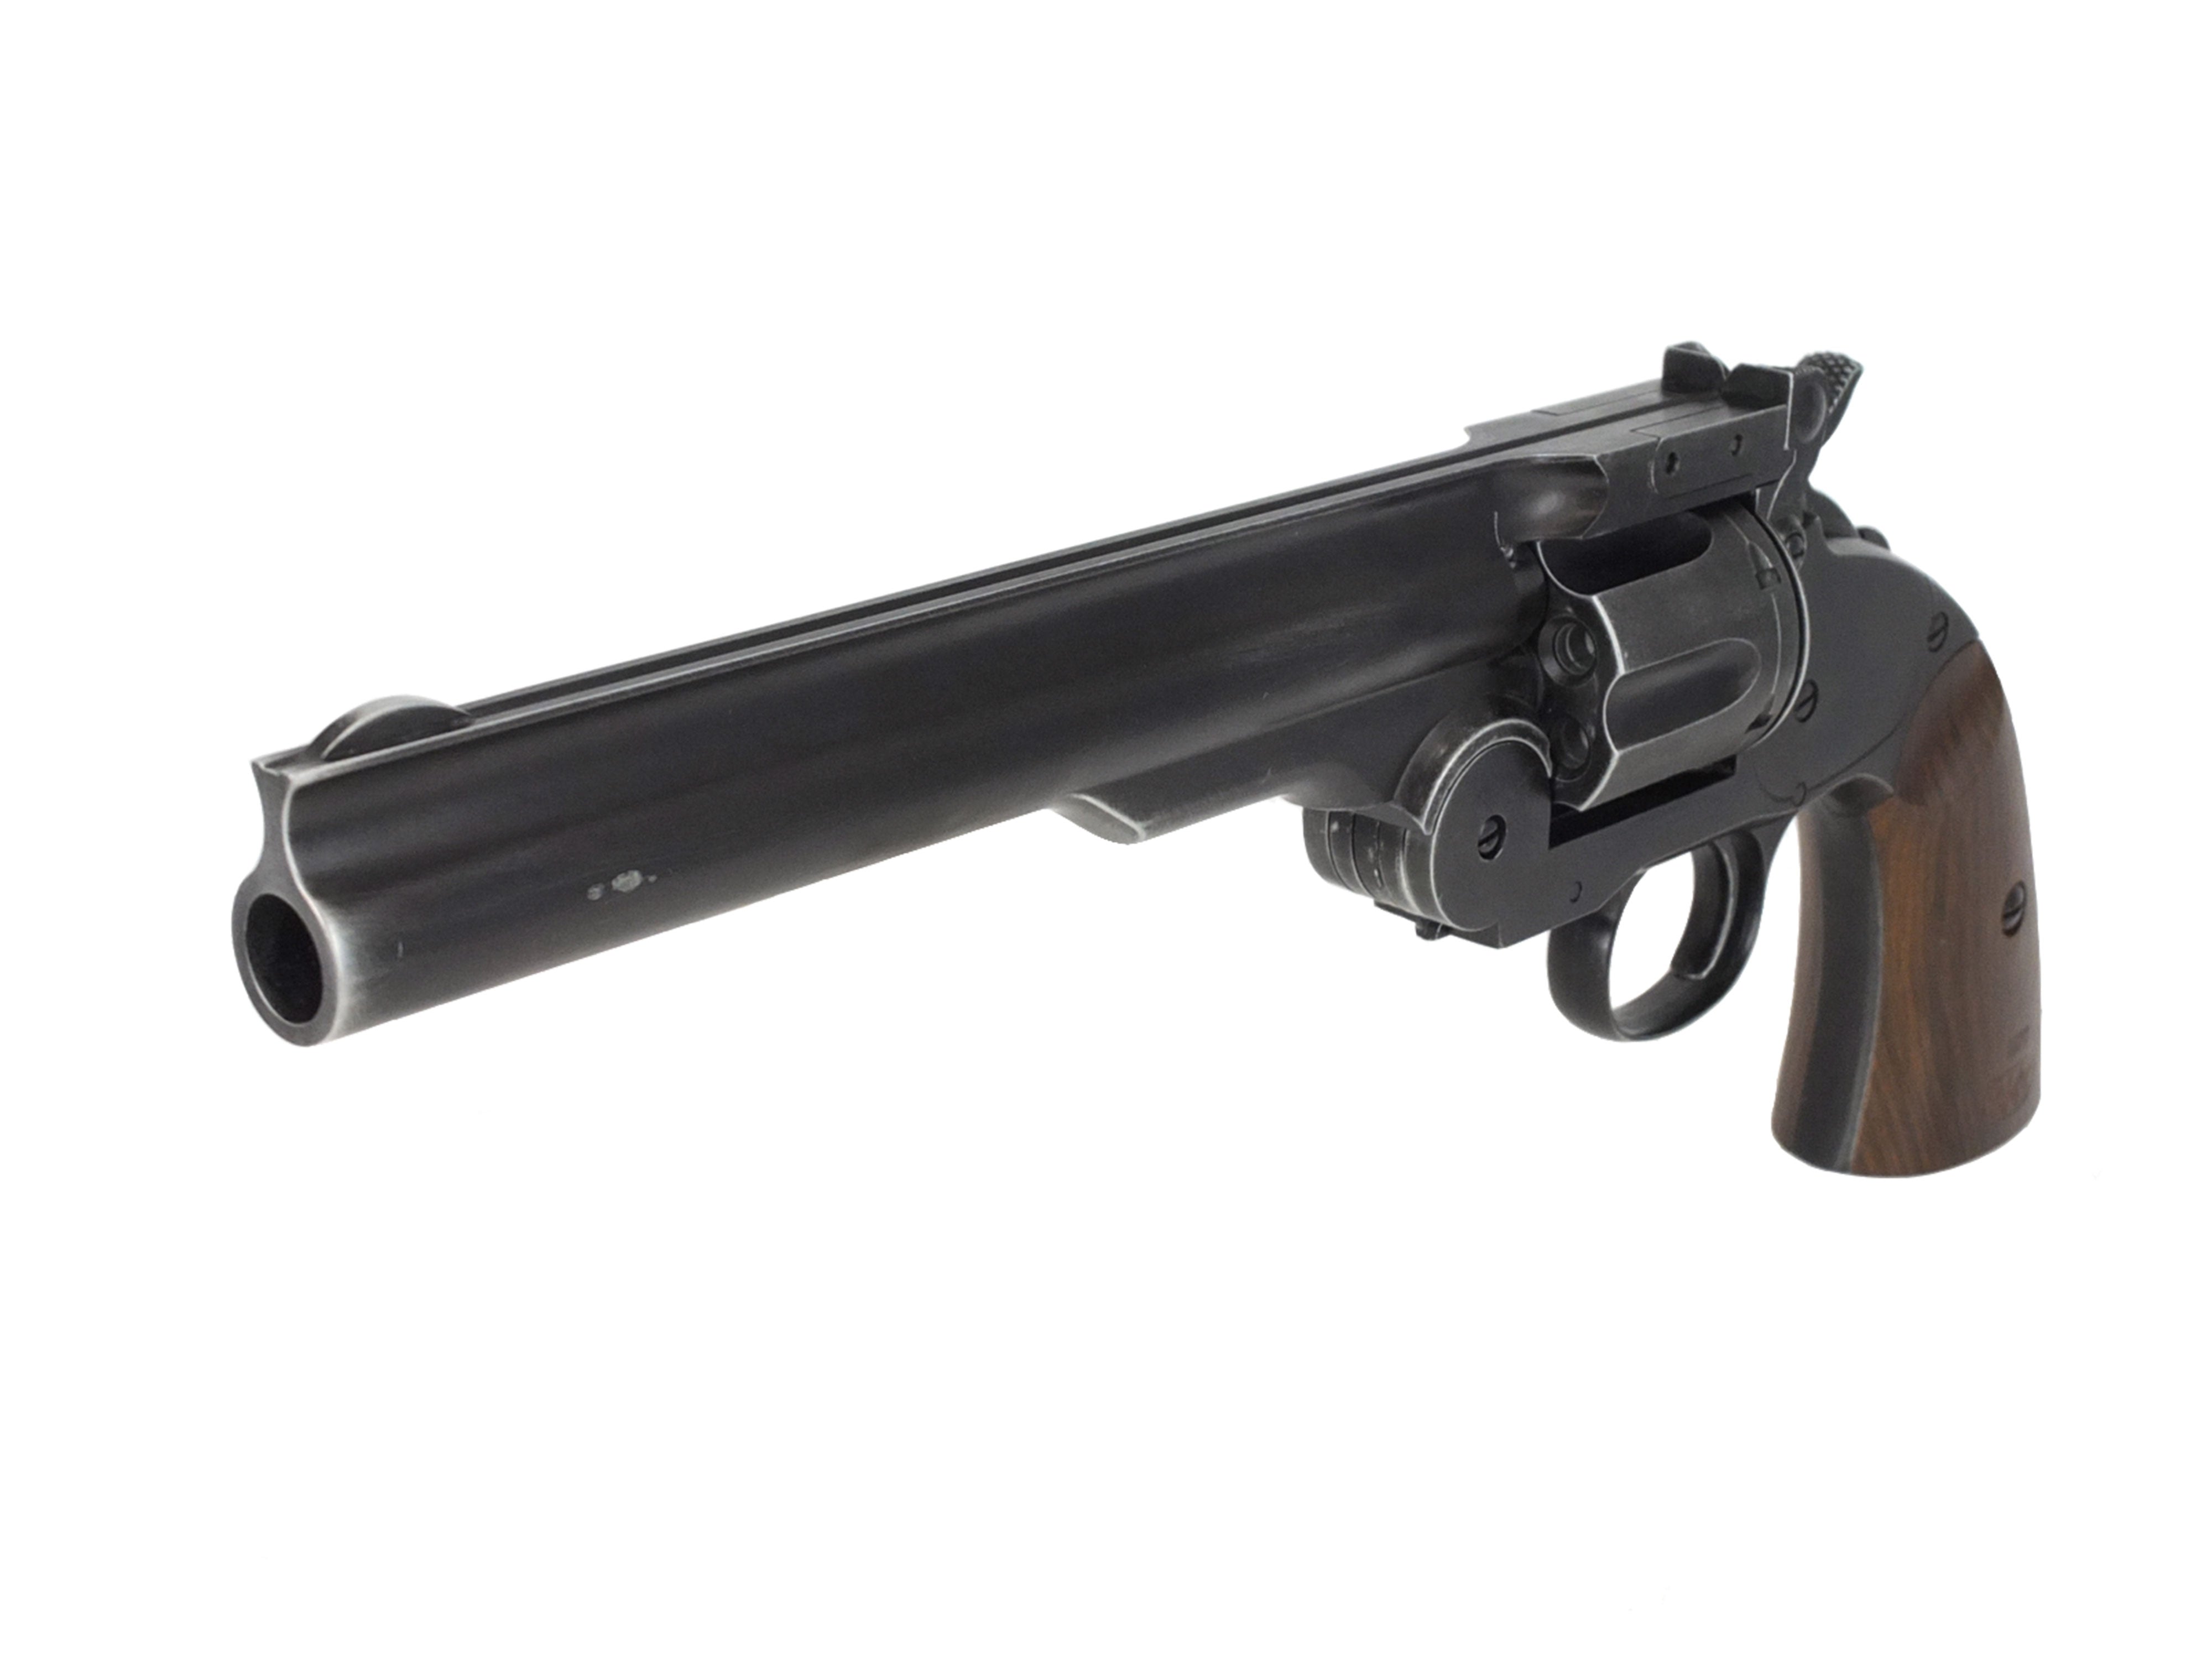 SALE人気WG社製 Smith&Wesson 1877 MAJOR3 6mmBB弾仕様パーツセット・・・・WA マルイ WE タナカ CAW マルシン HWS ハートフォード と互換不明 パーツ